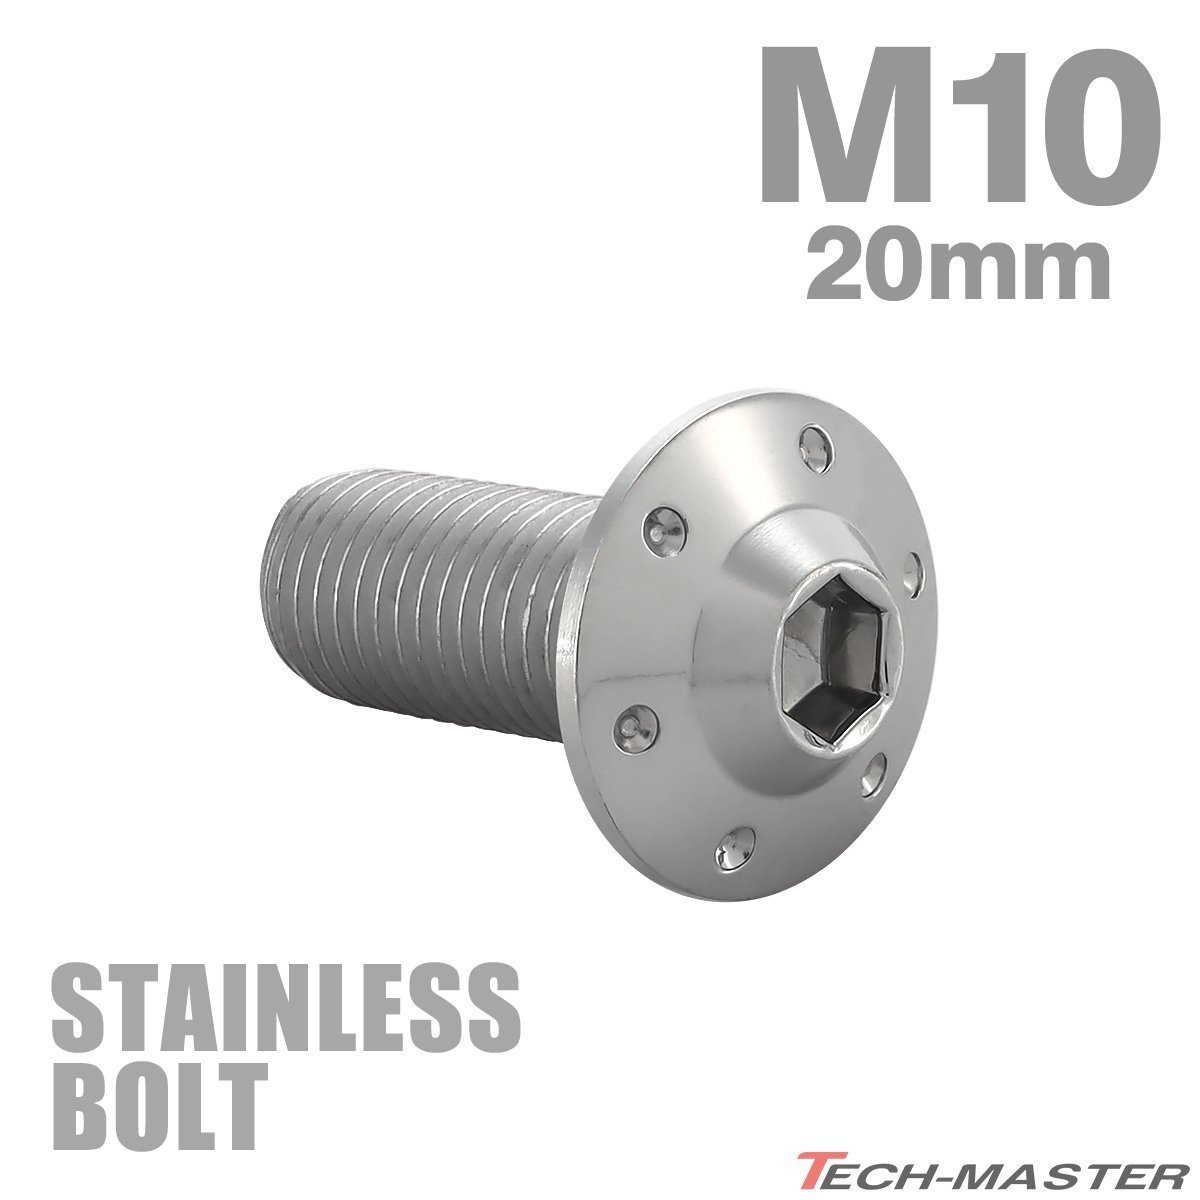 M10×20mm P1.25 ボタンボルト ステップホールヘッド ステンレス シルバー カウル フェンダー 車 バイク カスタム 1個 TR0640_画像1